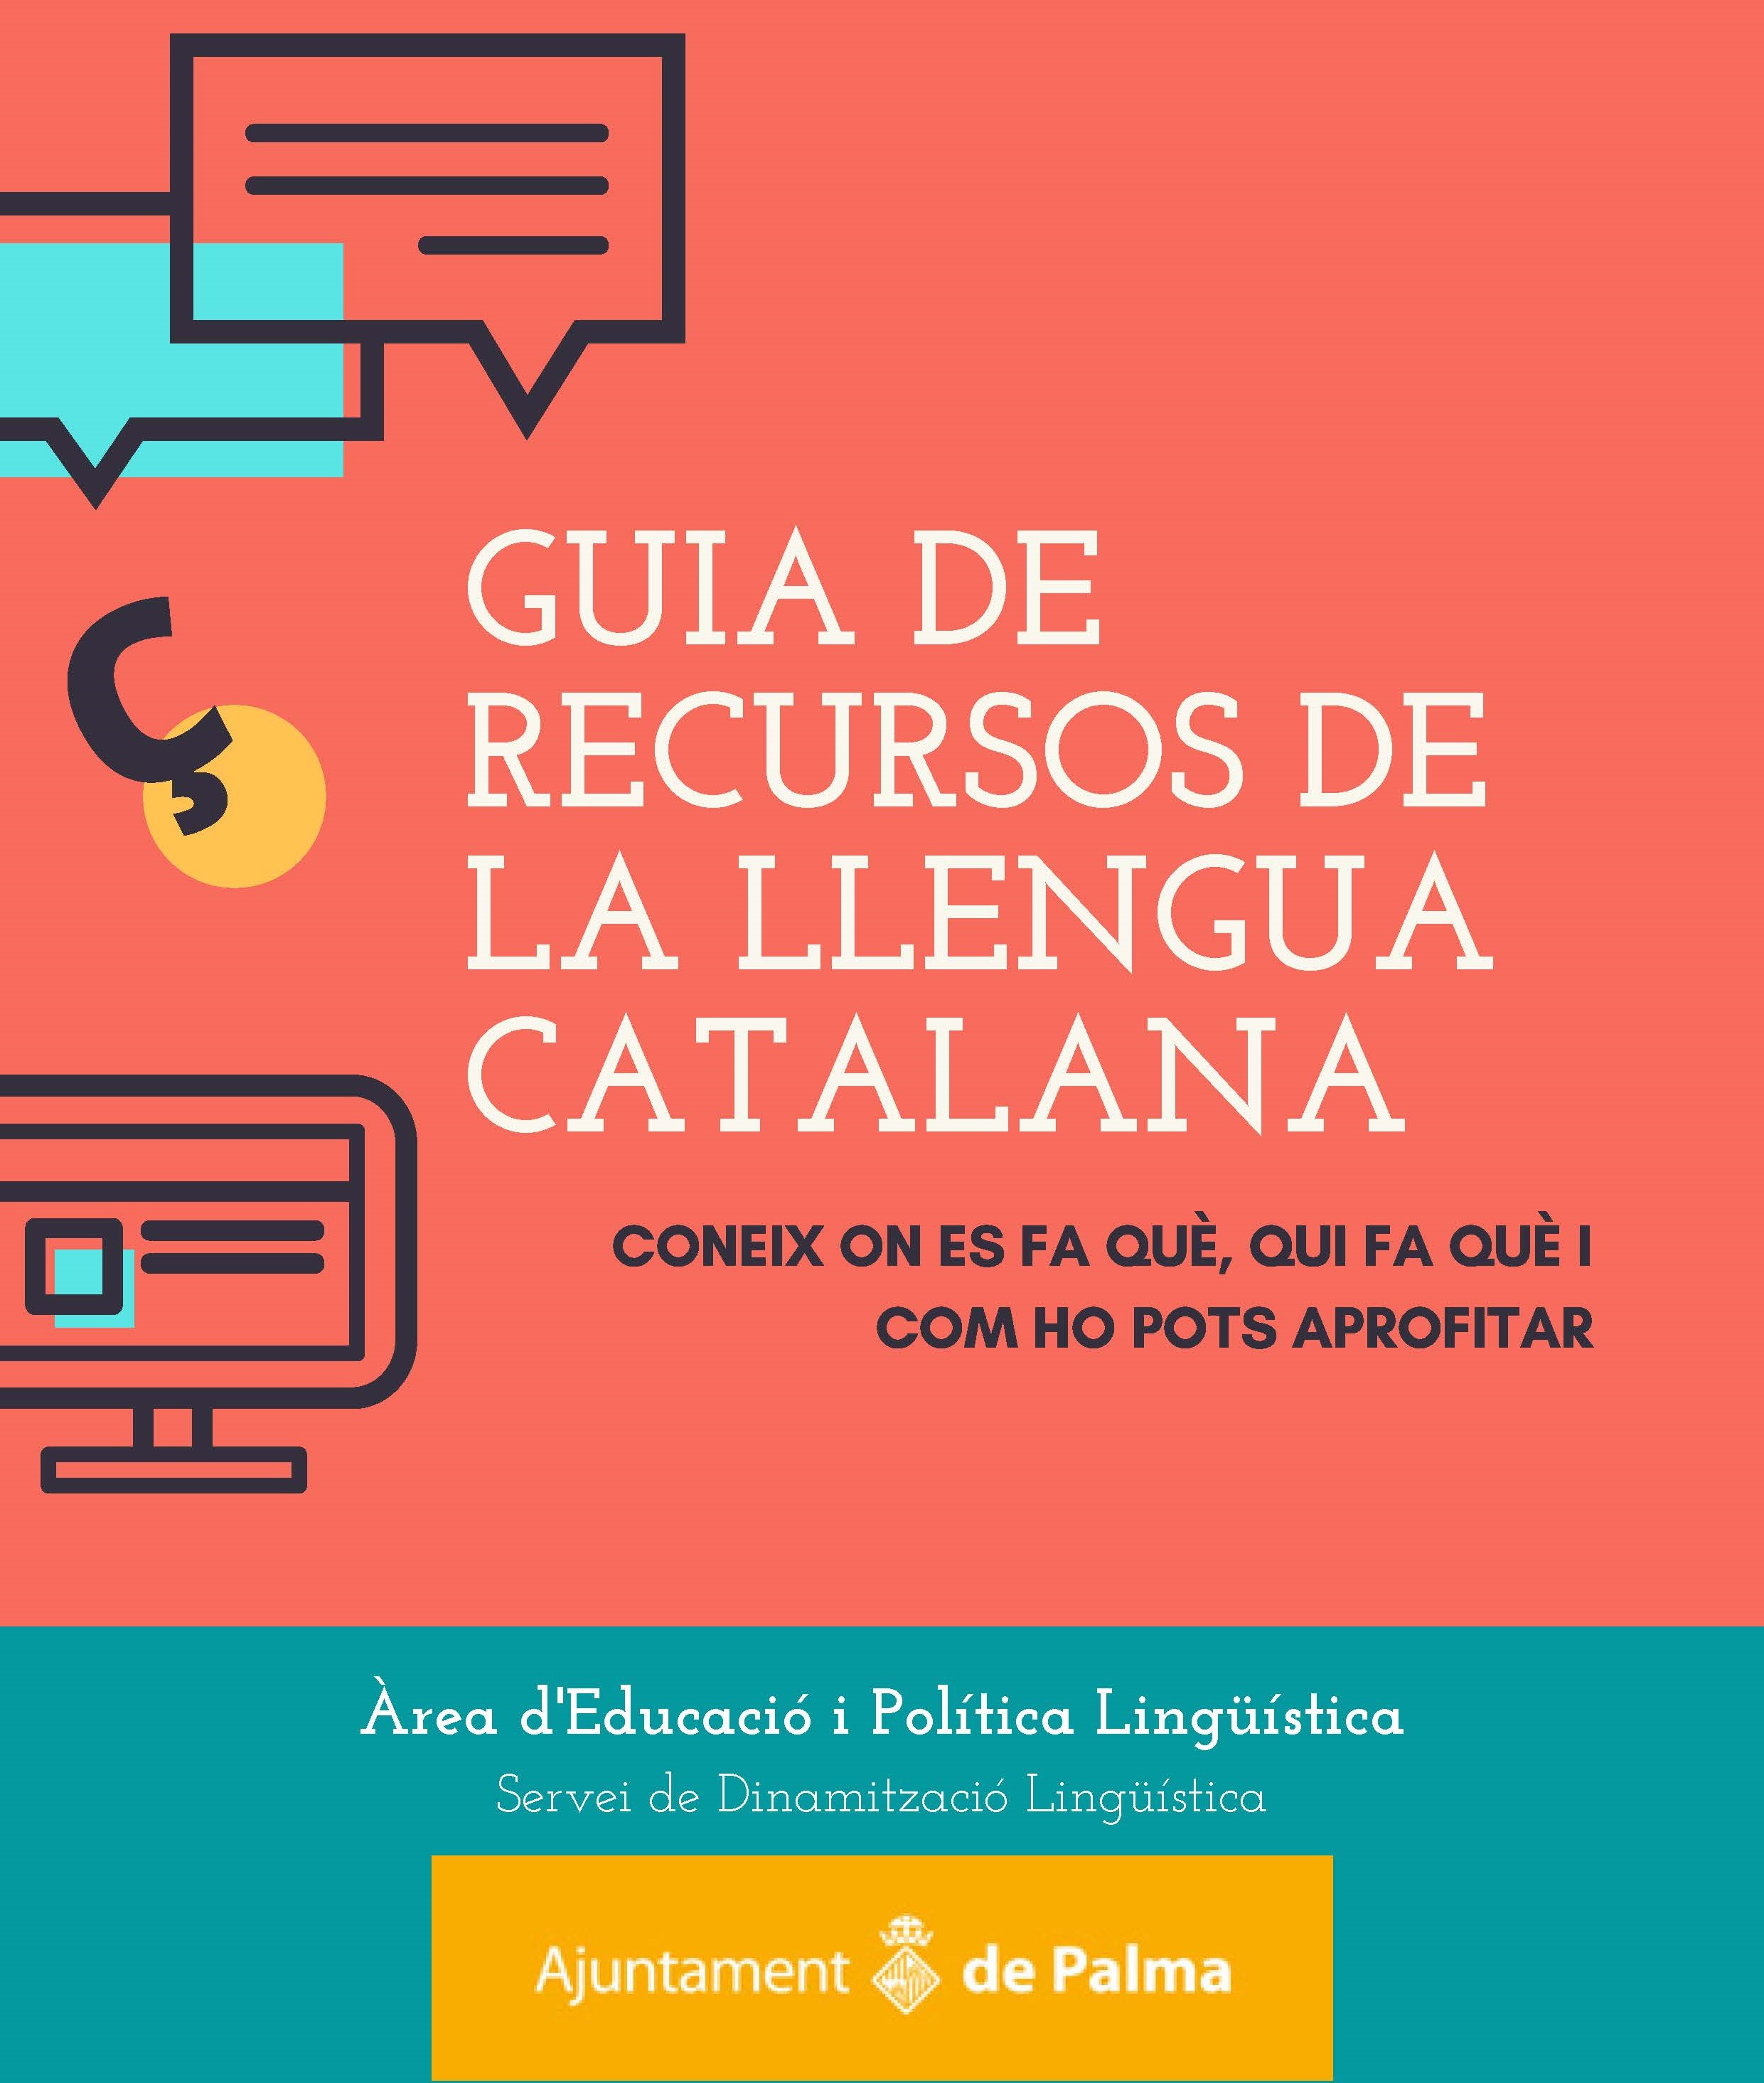 Guia de recursos de la llengua catalana a Palma